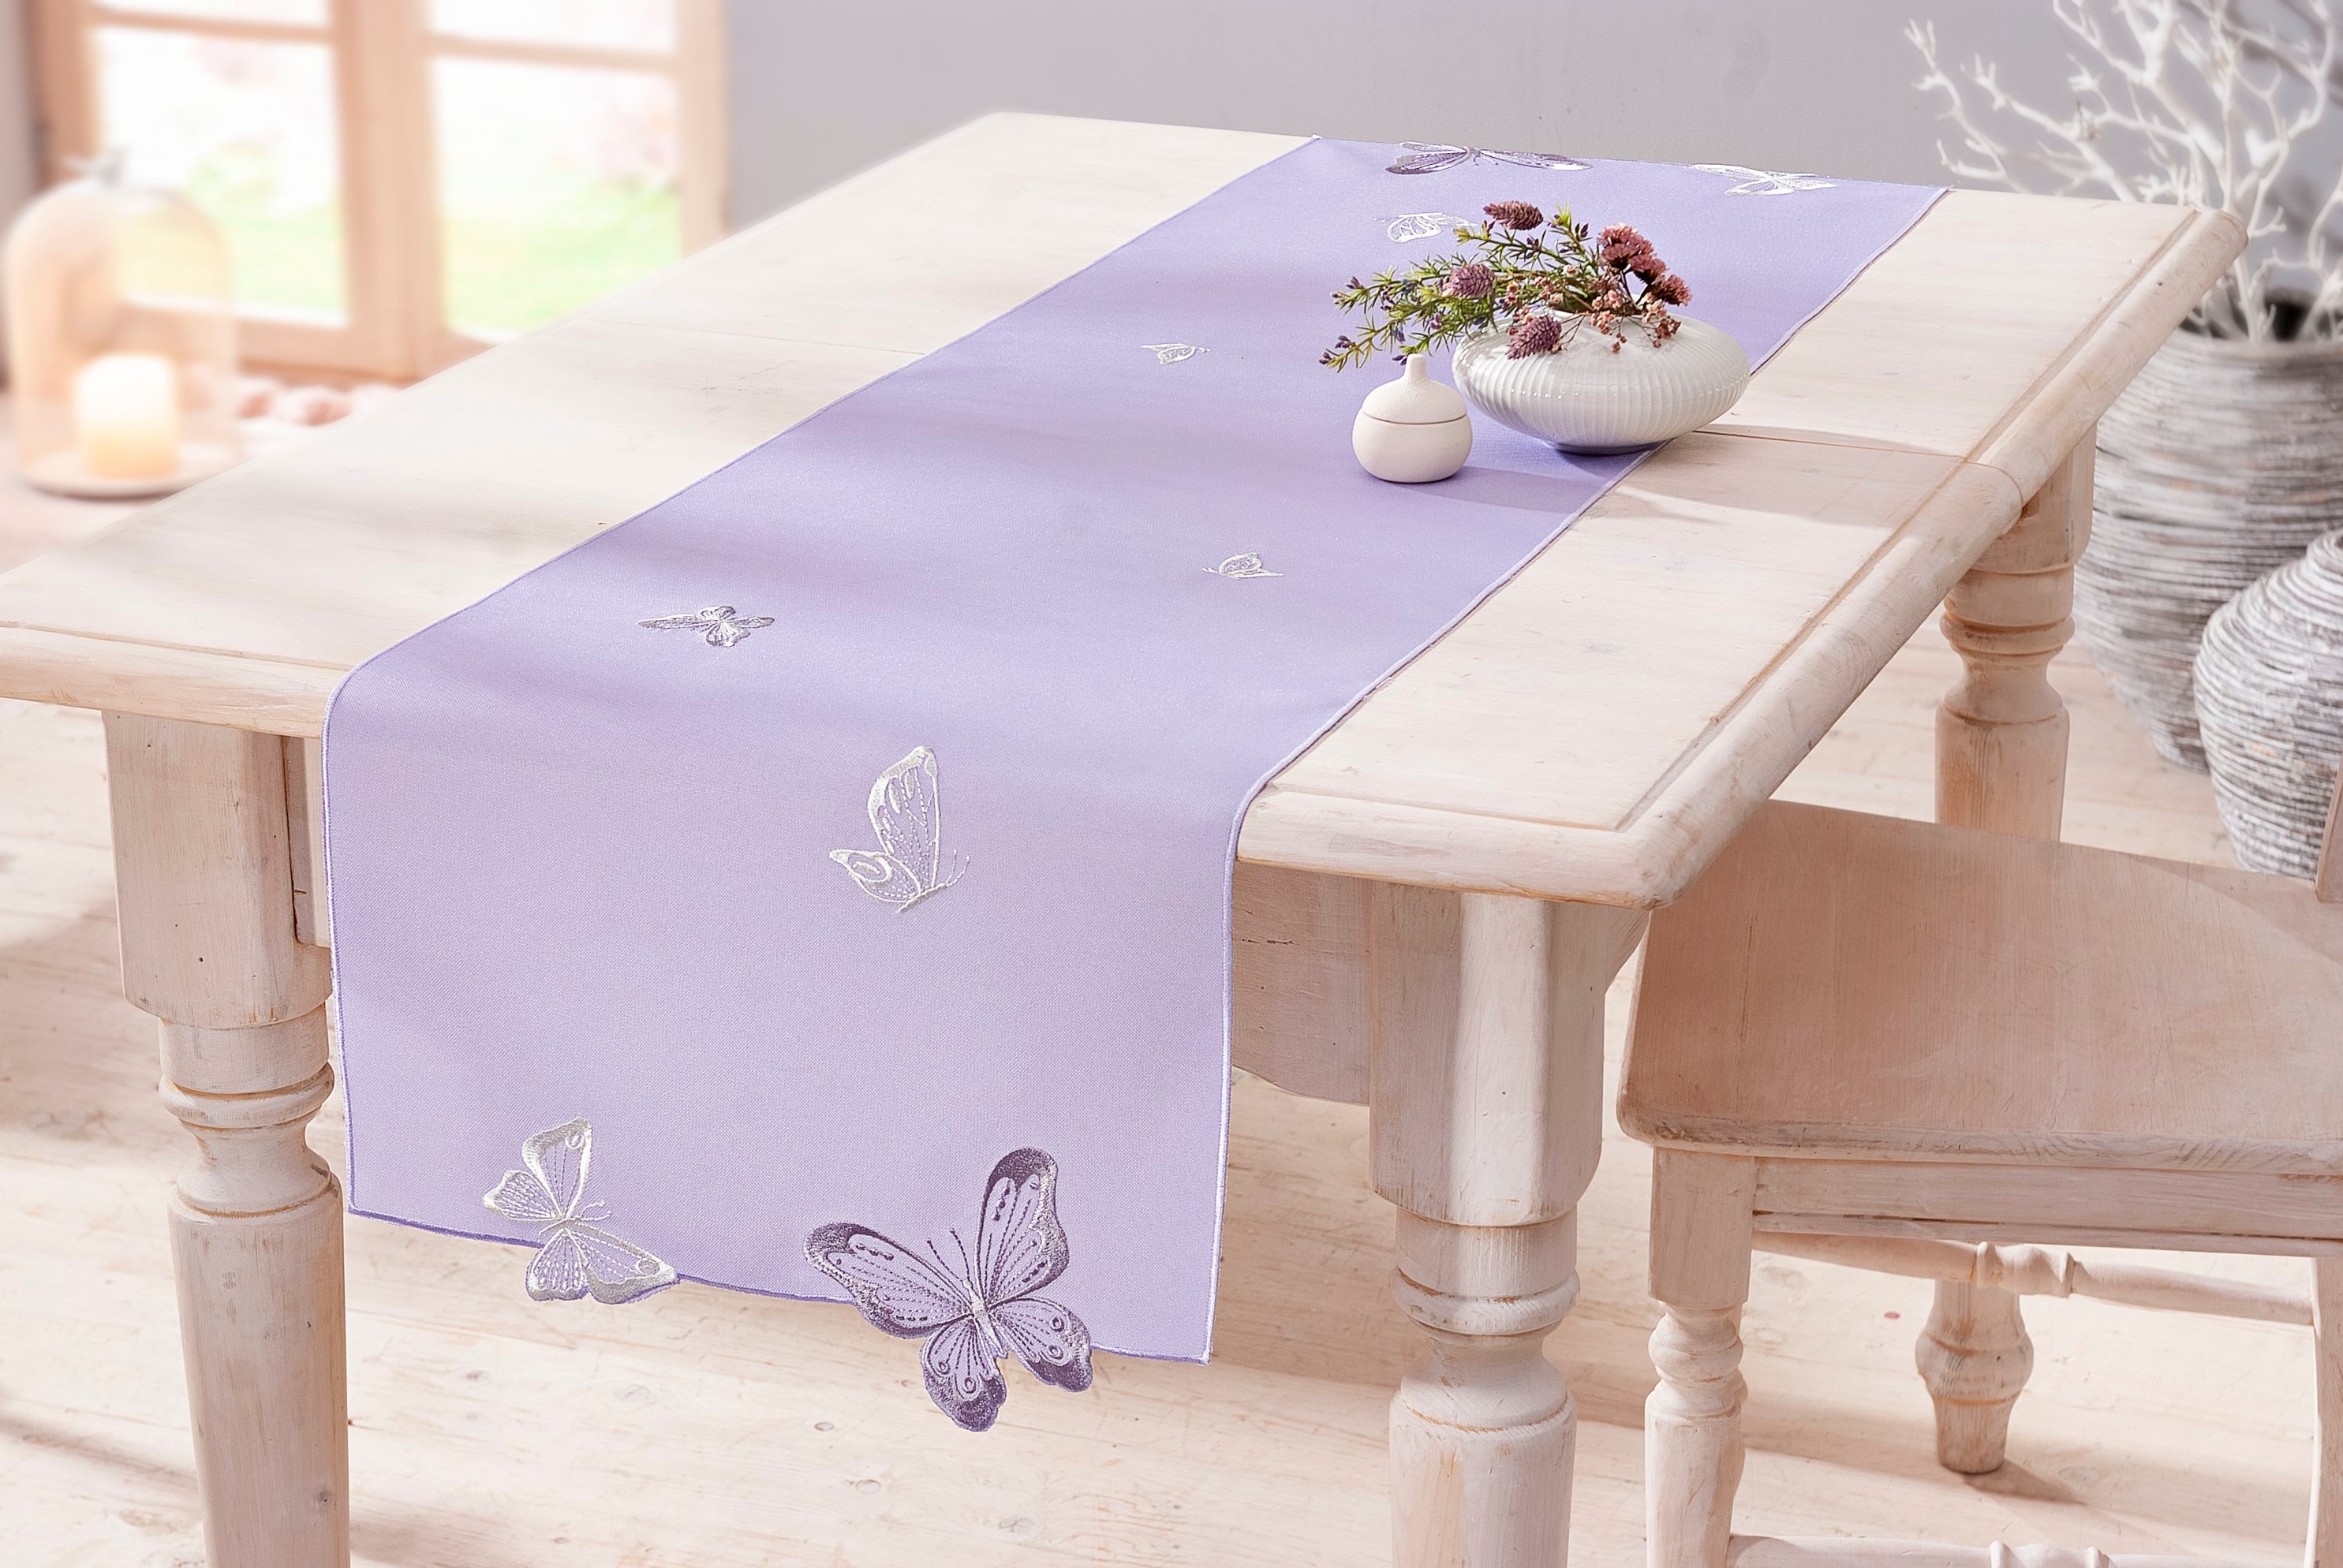 Tischläufer Violett 40 x 140 cm jetzt bei Weltbild.de bestellen